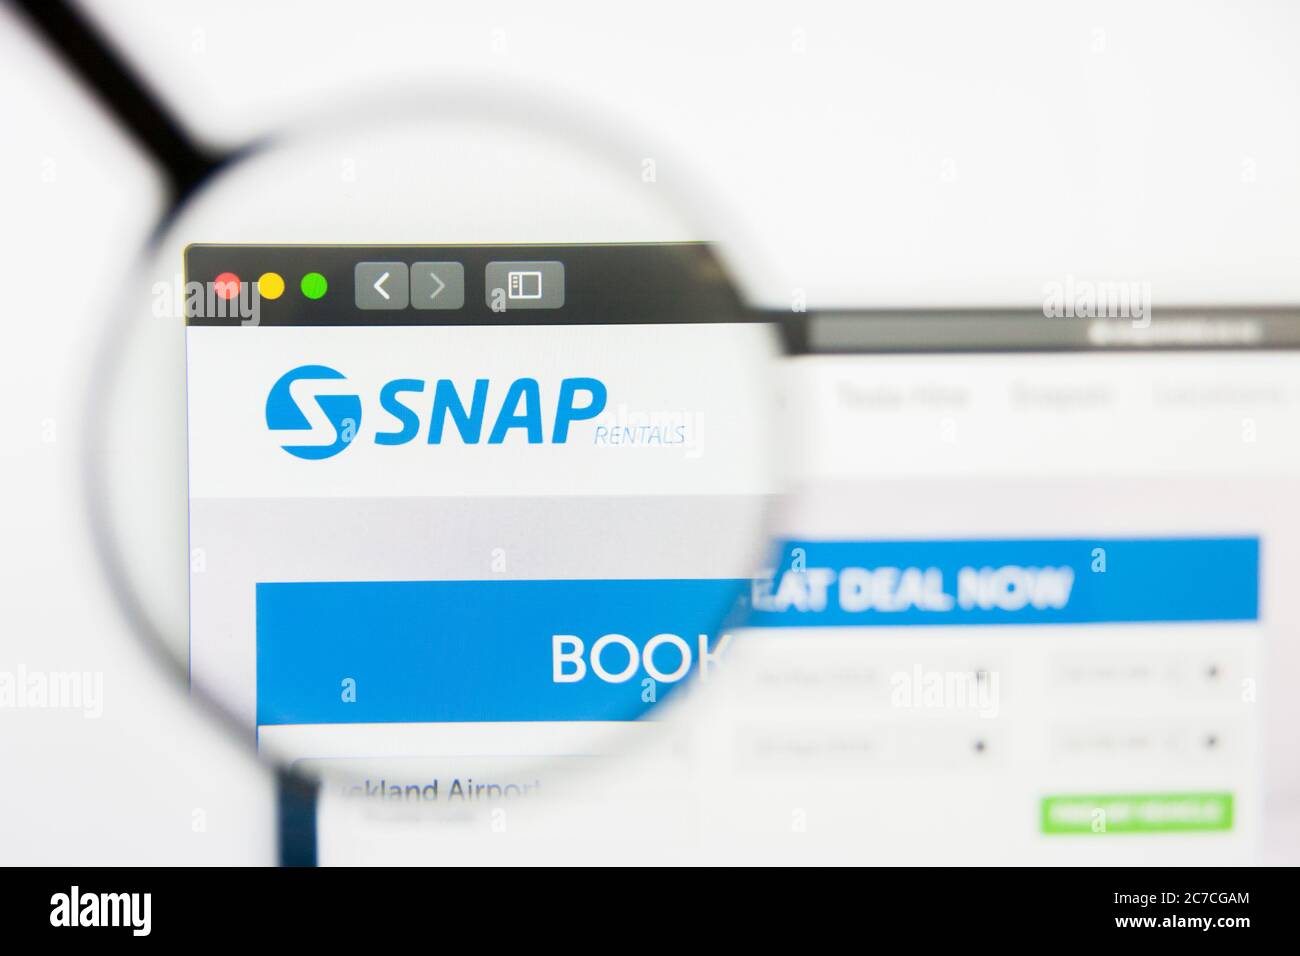 San Francisco, California, USA - 29. März 2019: Illustrative Editorial der Snap Rentals Website Homepage. Snap Rentals Logo sichtbar auf dem Bildschirm. Stockfoto